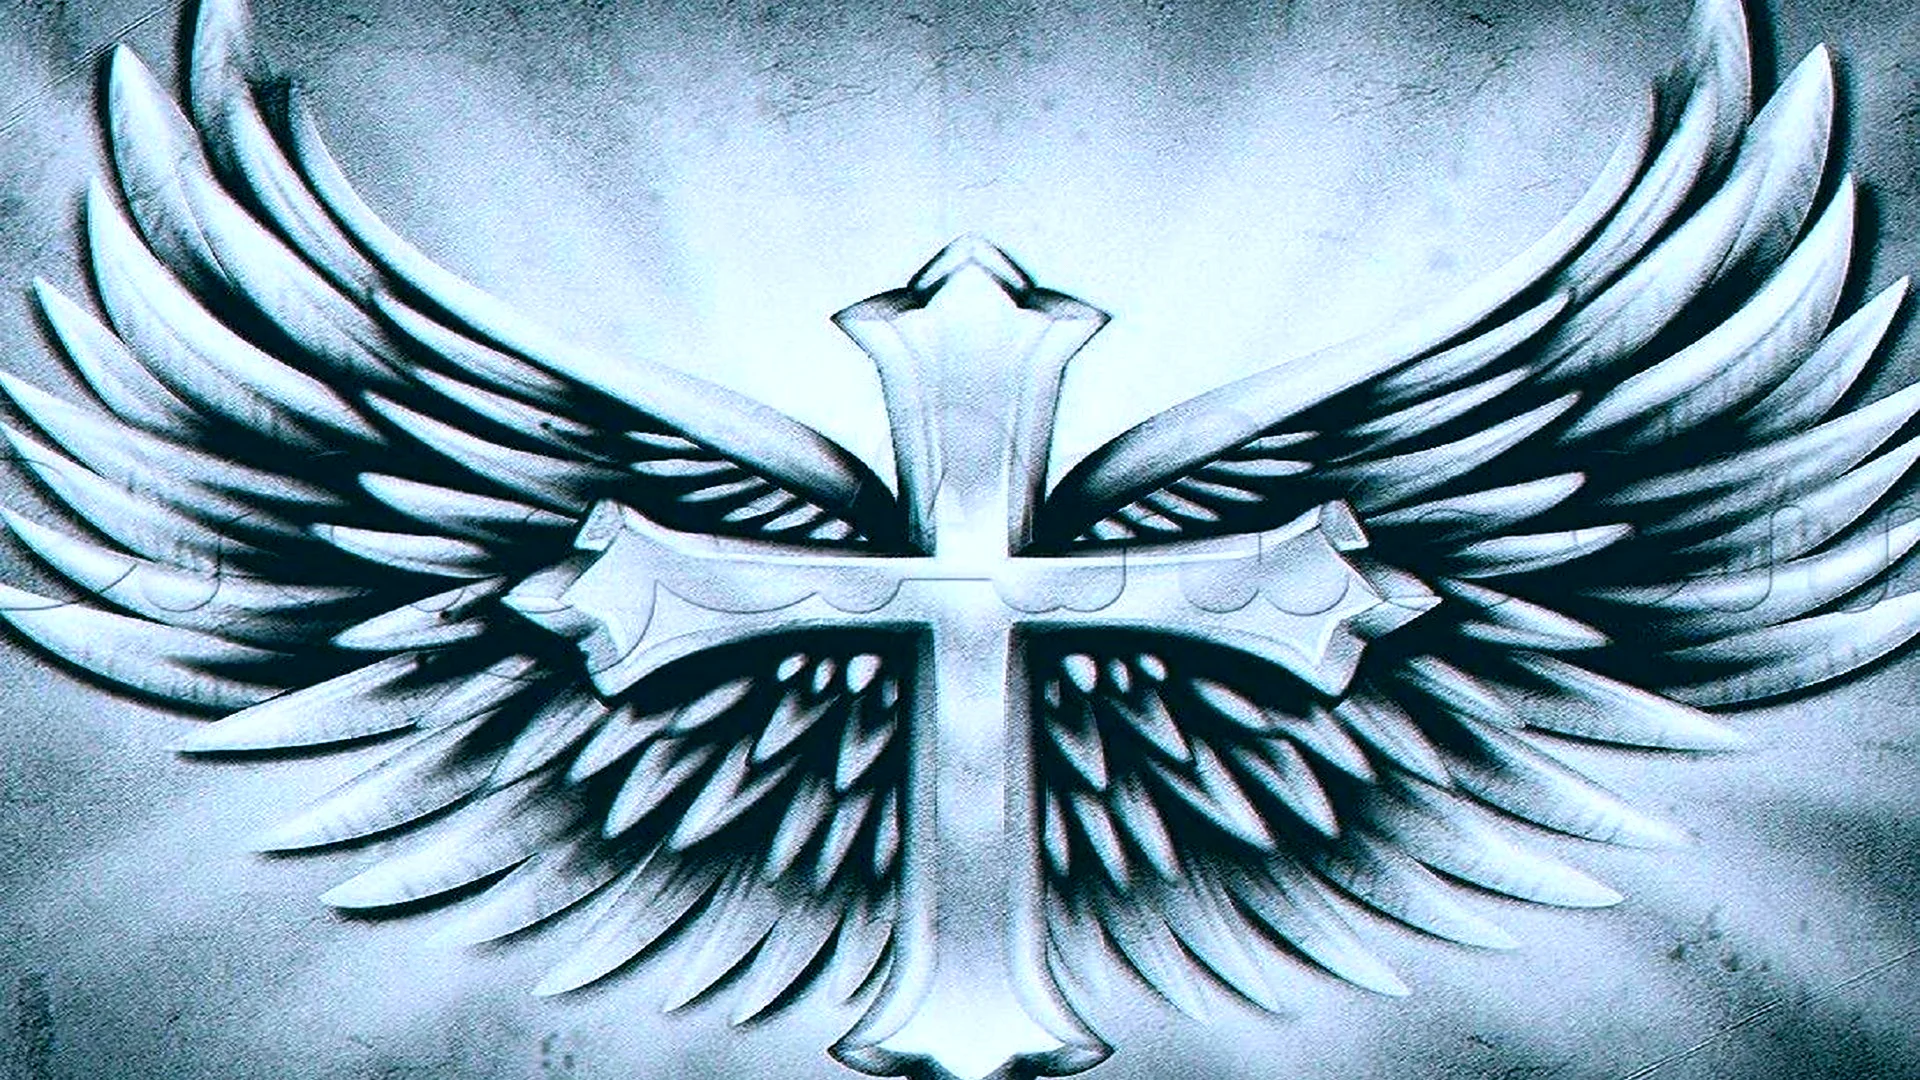 Крест с крыльями